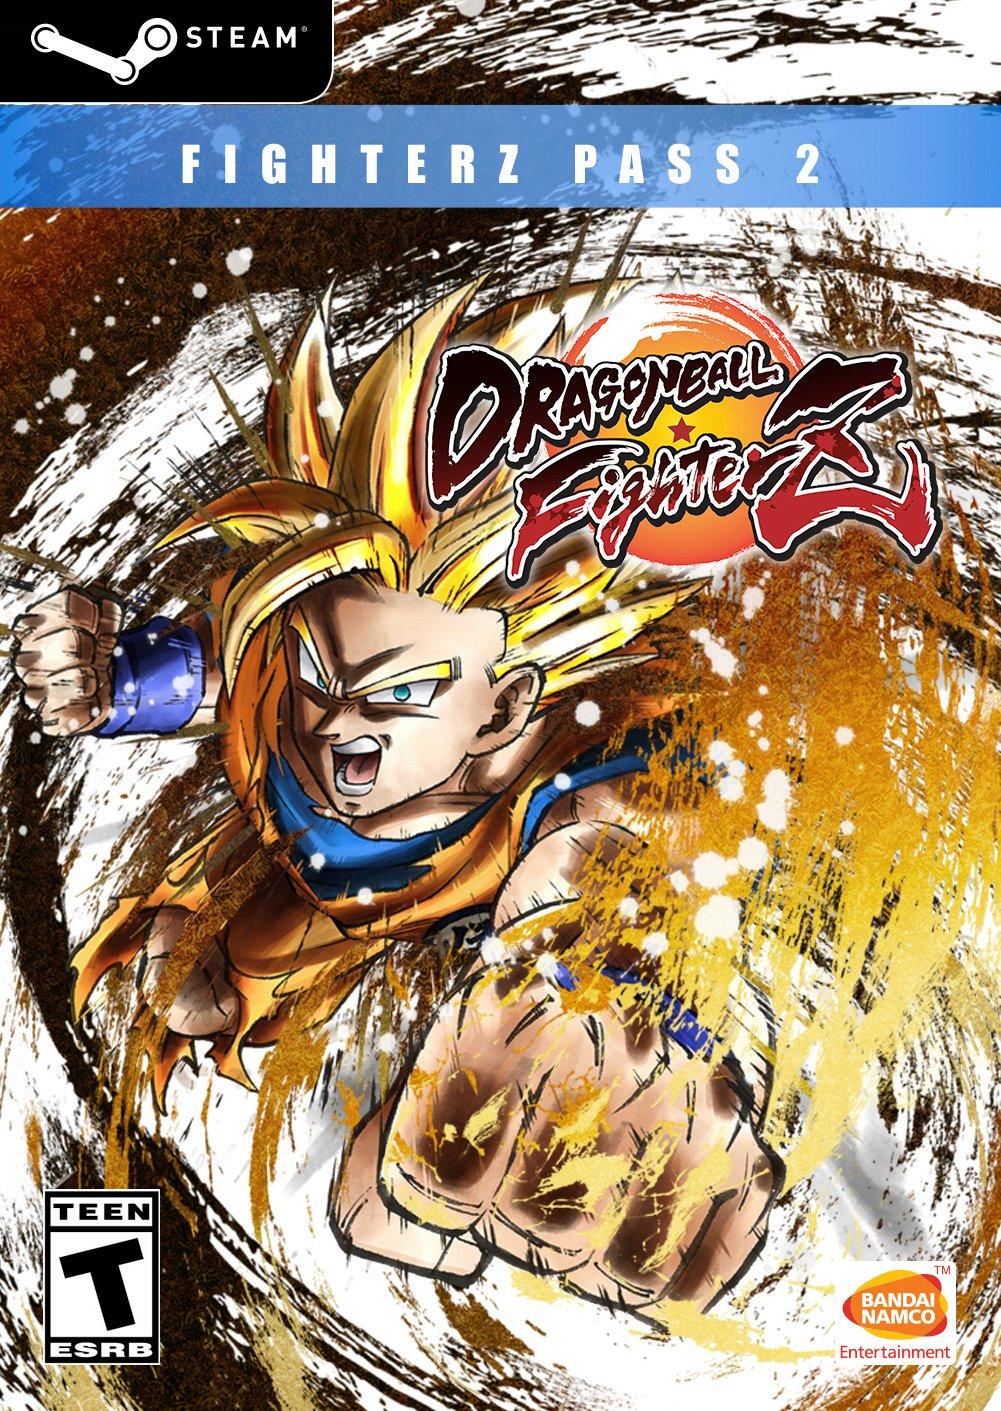 Dragon Ball FighterZ Pass 2 DLC - PC